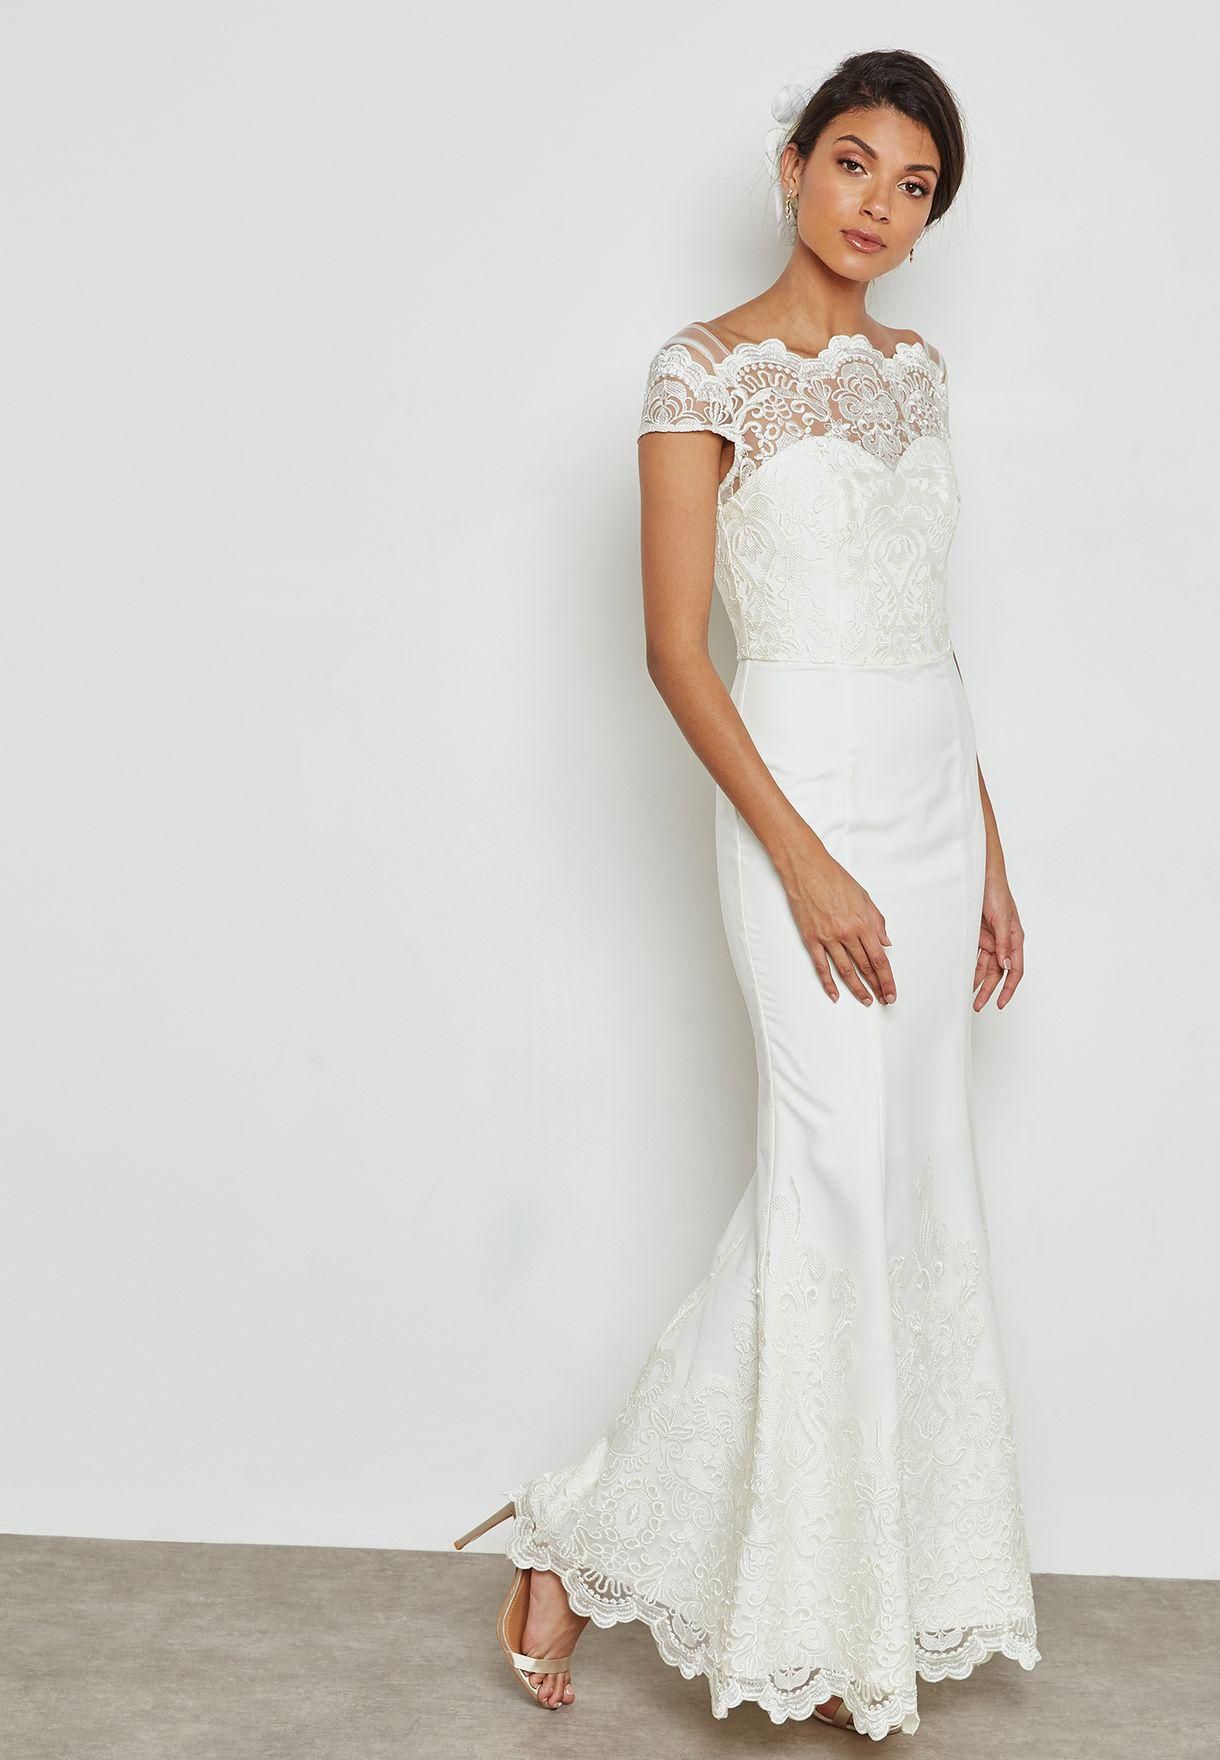 Top UAE  Online  Stores  to Buy Wedding  Dress  Arabia Weddings 